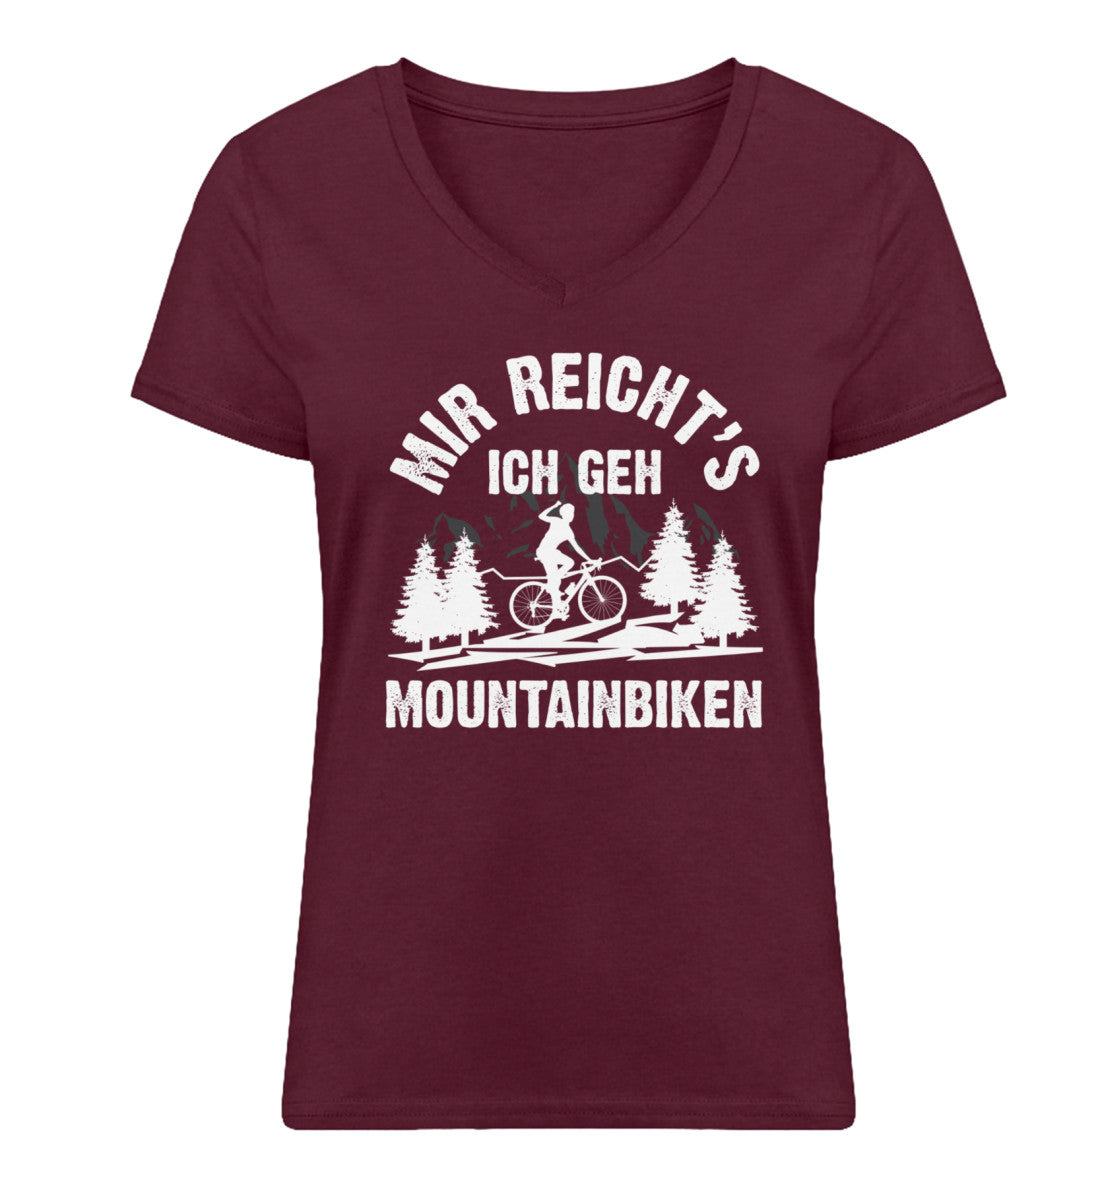 Mir reicht's ich geh mountainbiken - Damen Organic V-Neck Shirt mountainbike Weinrot